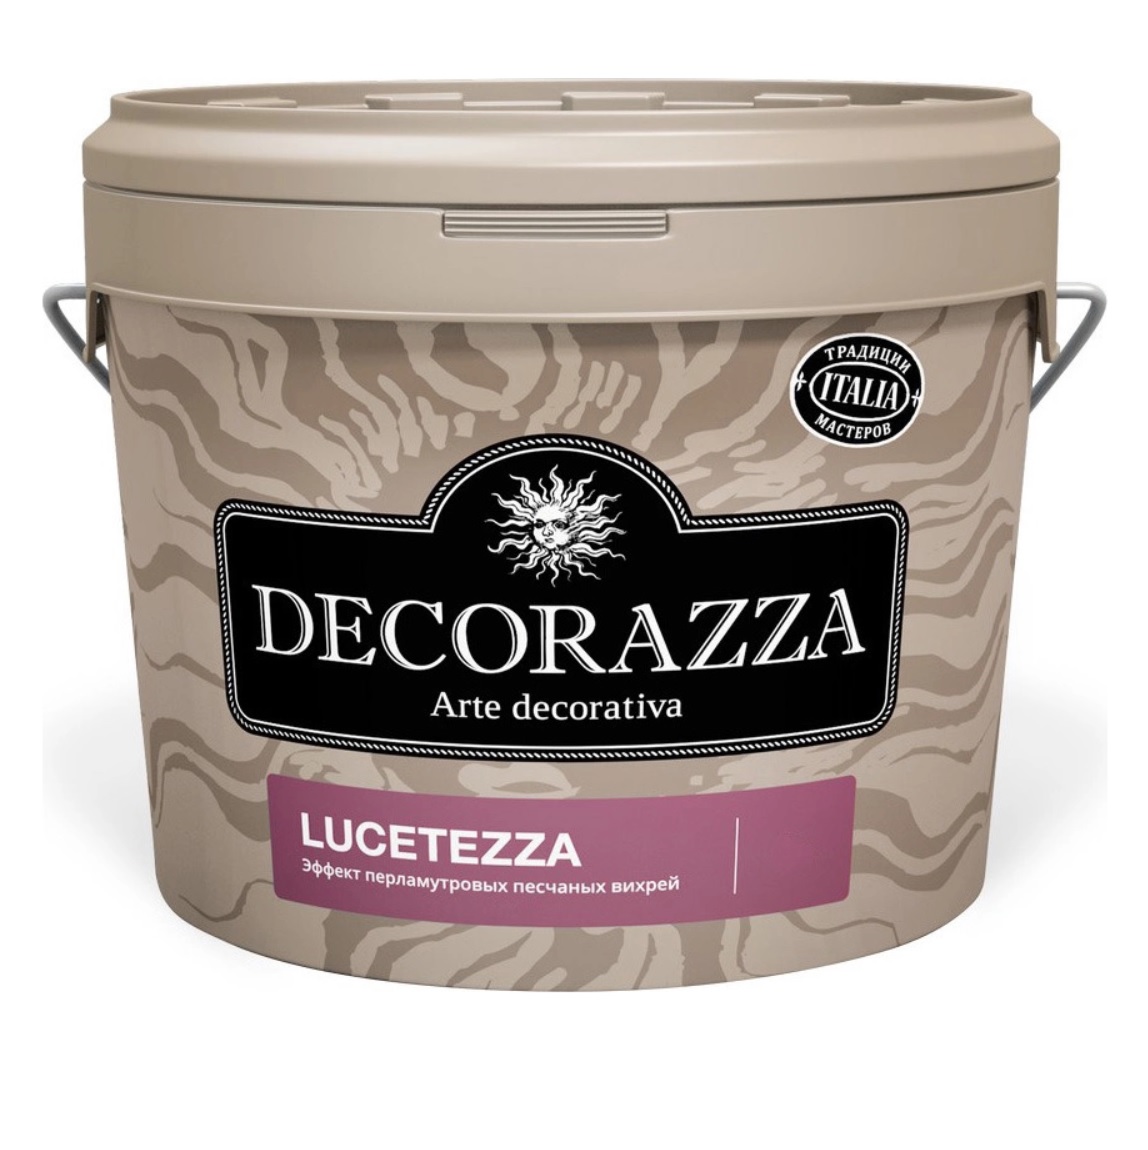 Декоративная краска Decorazza lucetezza база aluminium 1.0кг краска decorazza lucetezza nova lcn 001 1 л